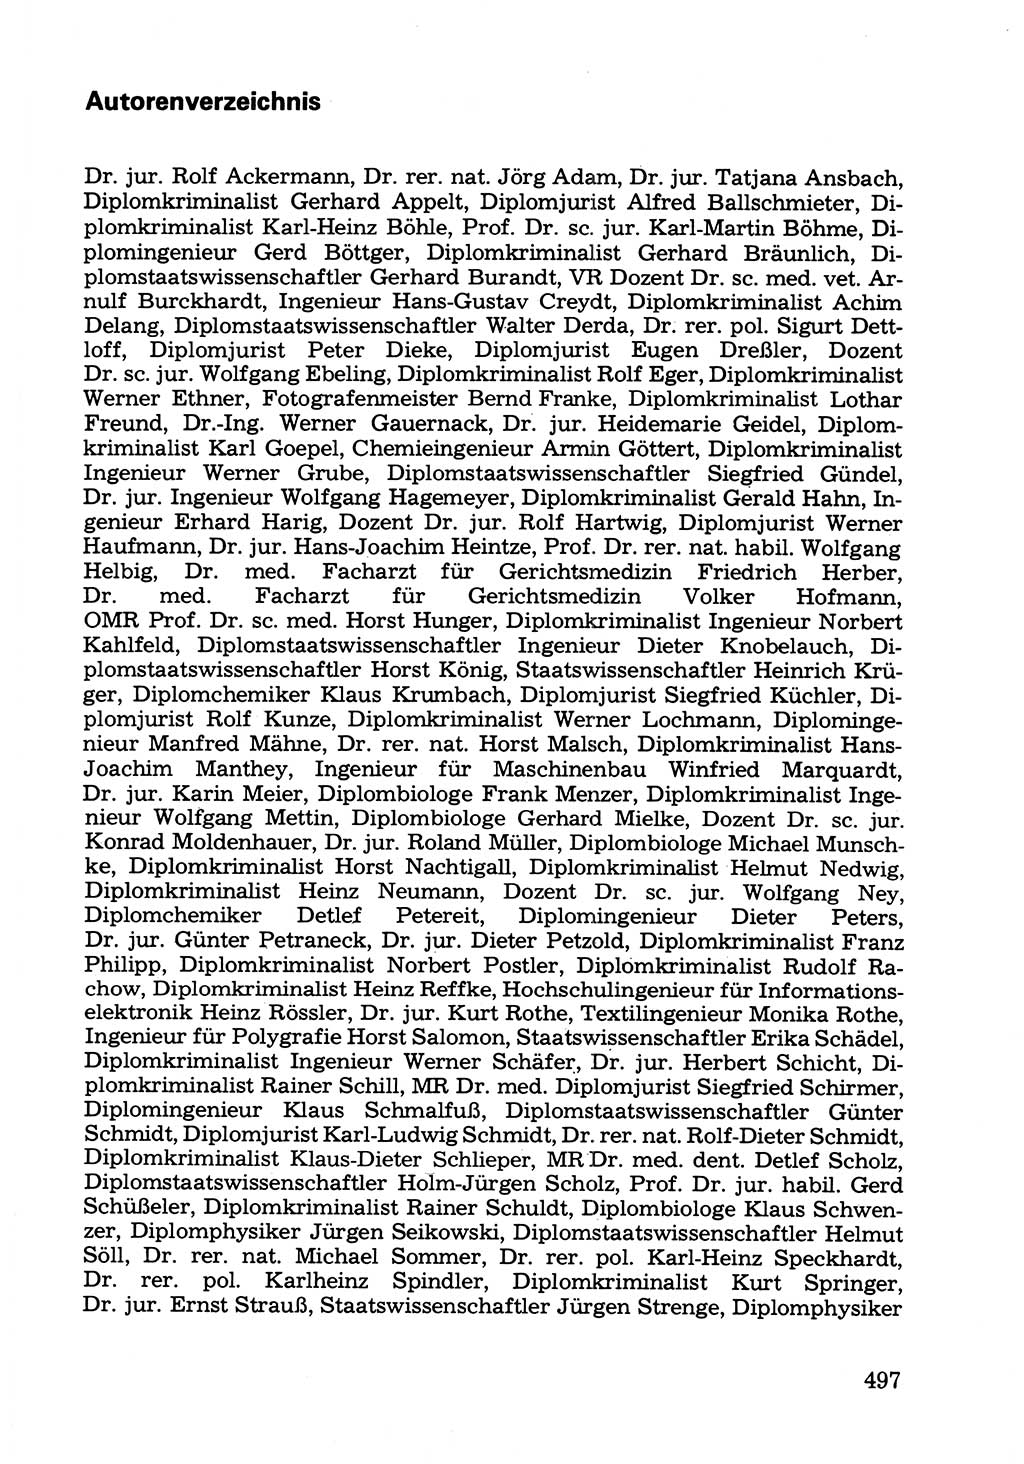 Wörterbuch der sozialistischen Kriminalistik [Deutsche Demokratische Republik (DDR)] 1981, Seite 497 (Wb. soz. Krim. DDR 1981, S. 497)